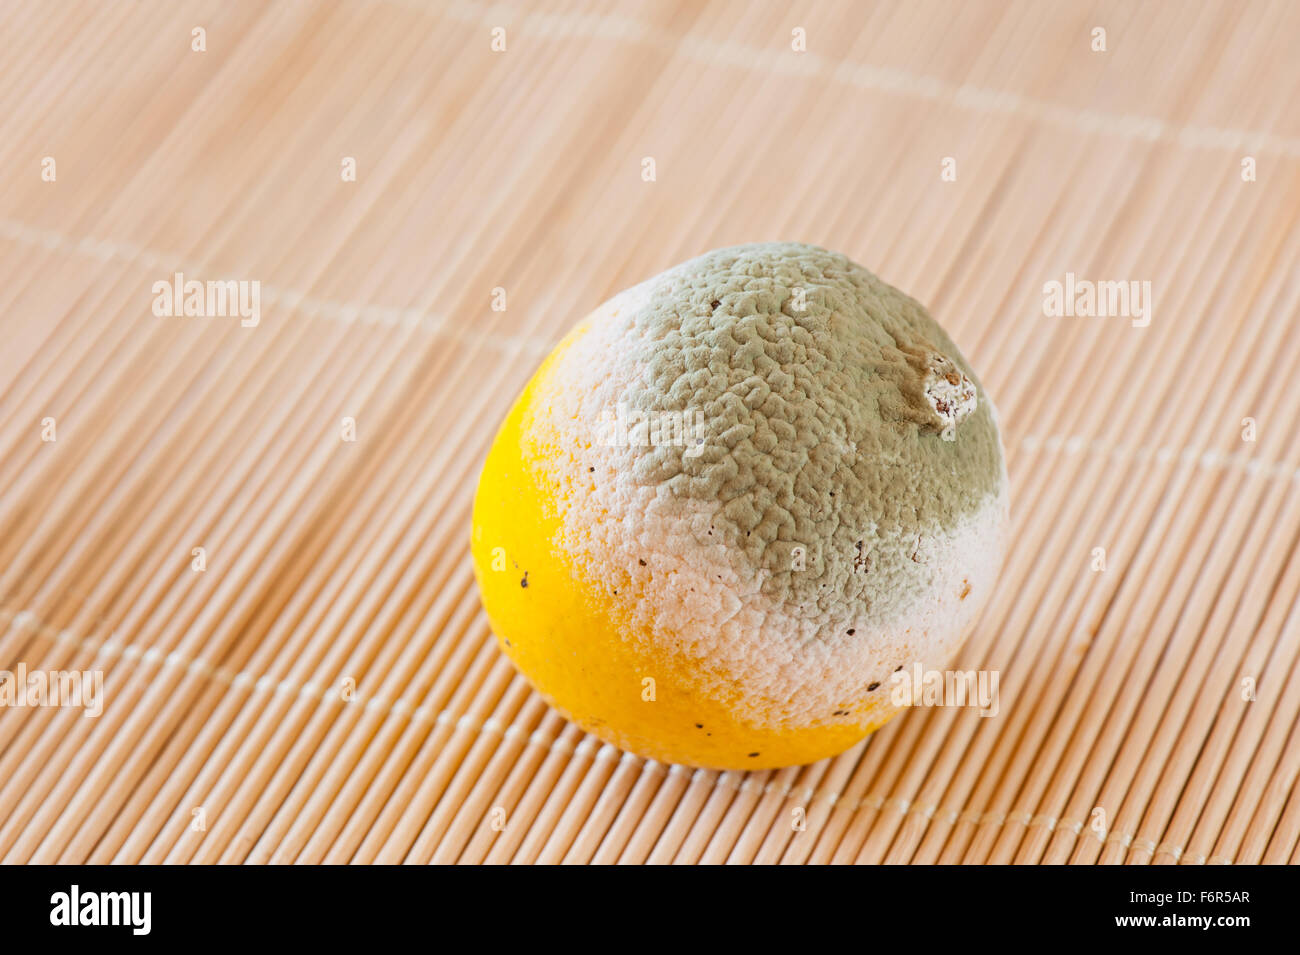 Moule verte sur fond jaune citron allongé sur le tapis, moisies et carié bad food wastage, un citron des ordures dans l'orientation horizontale Banque D'Images